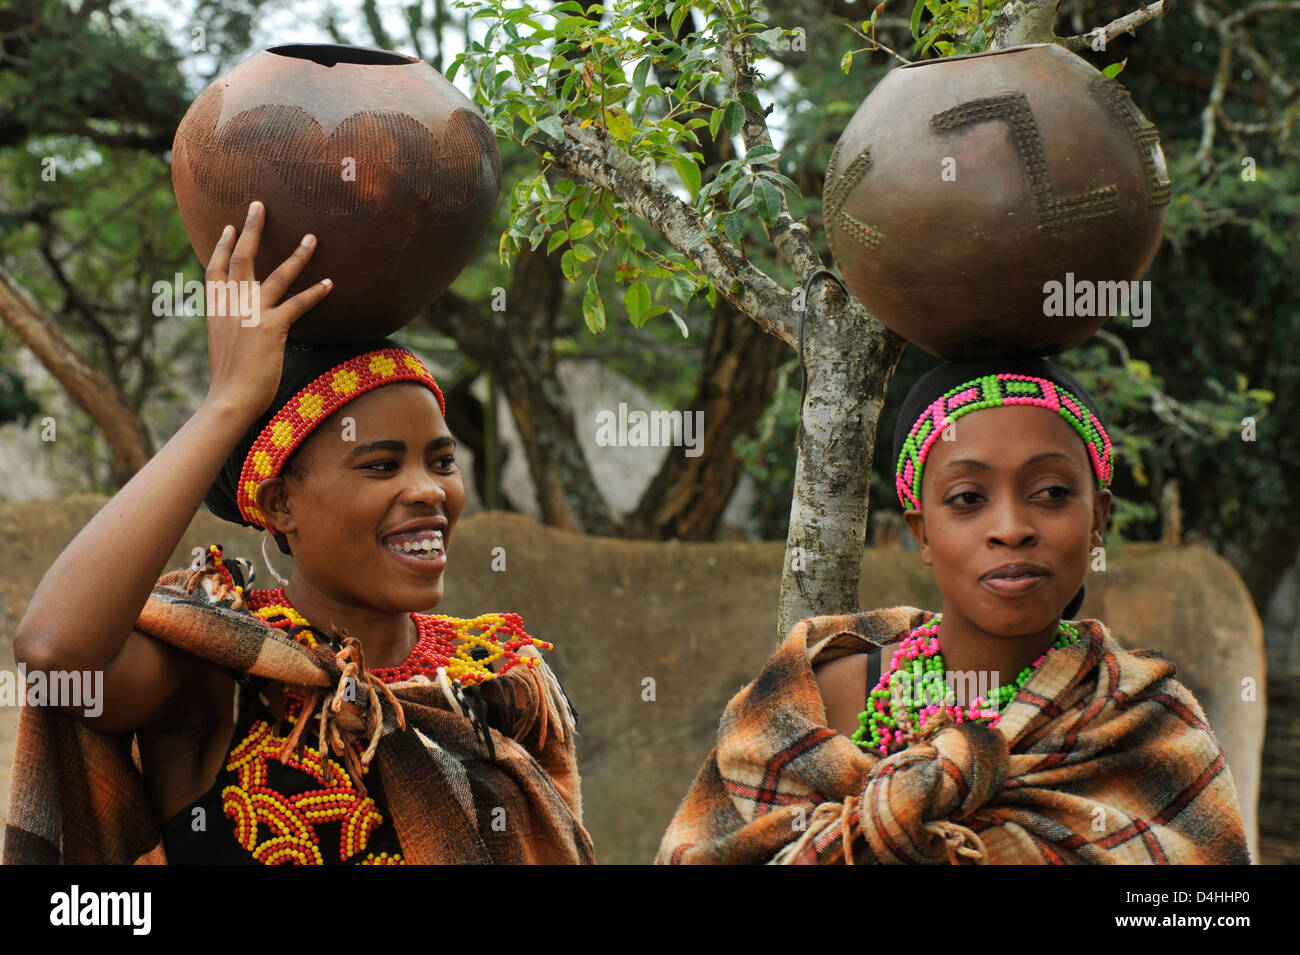 Young Zulu Women